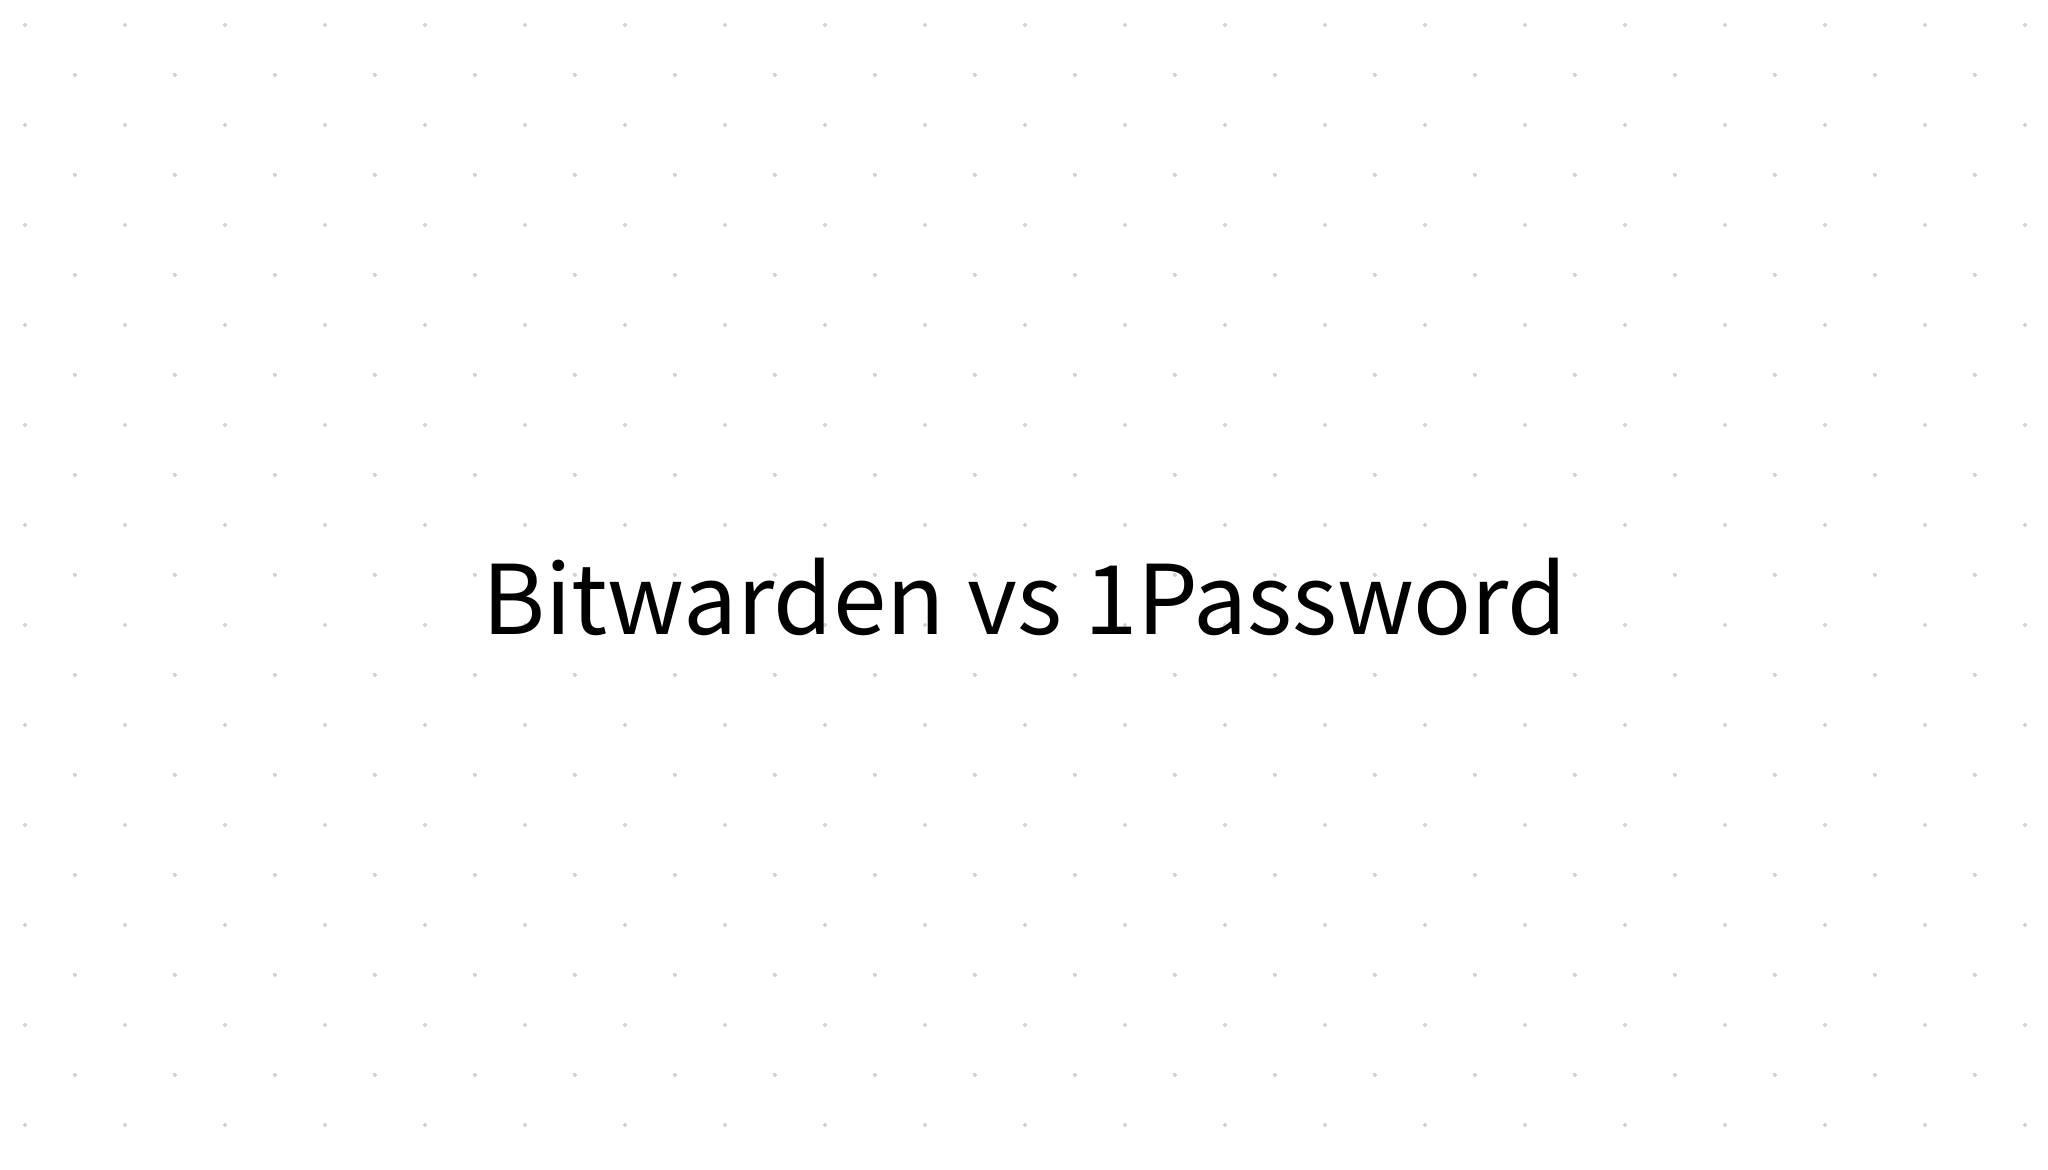 one password vs bitwarden